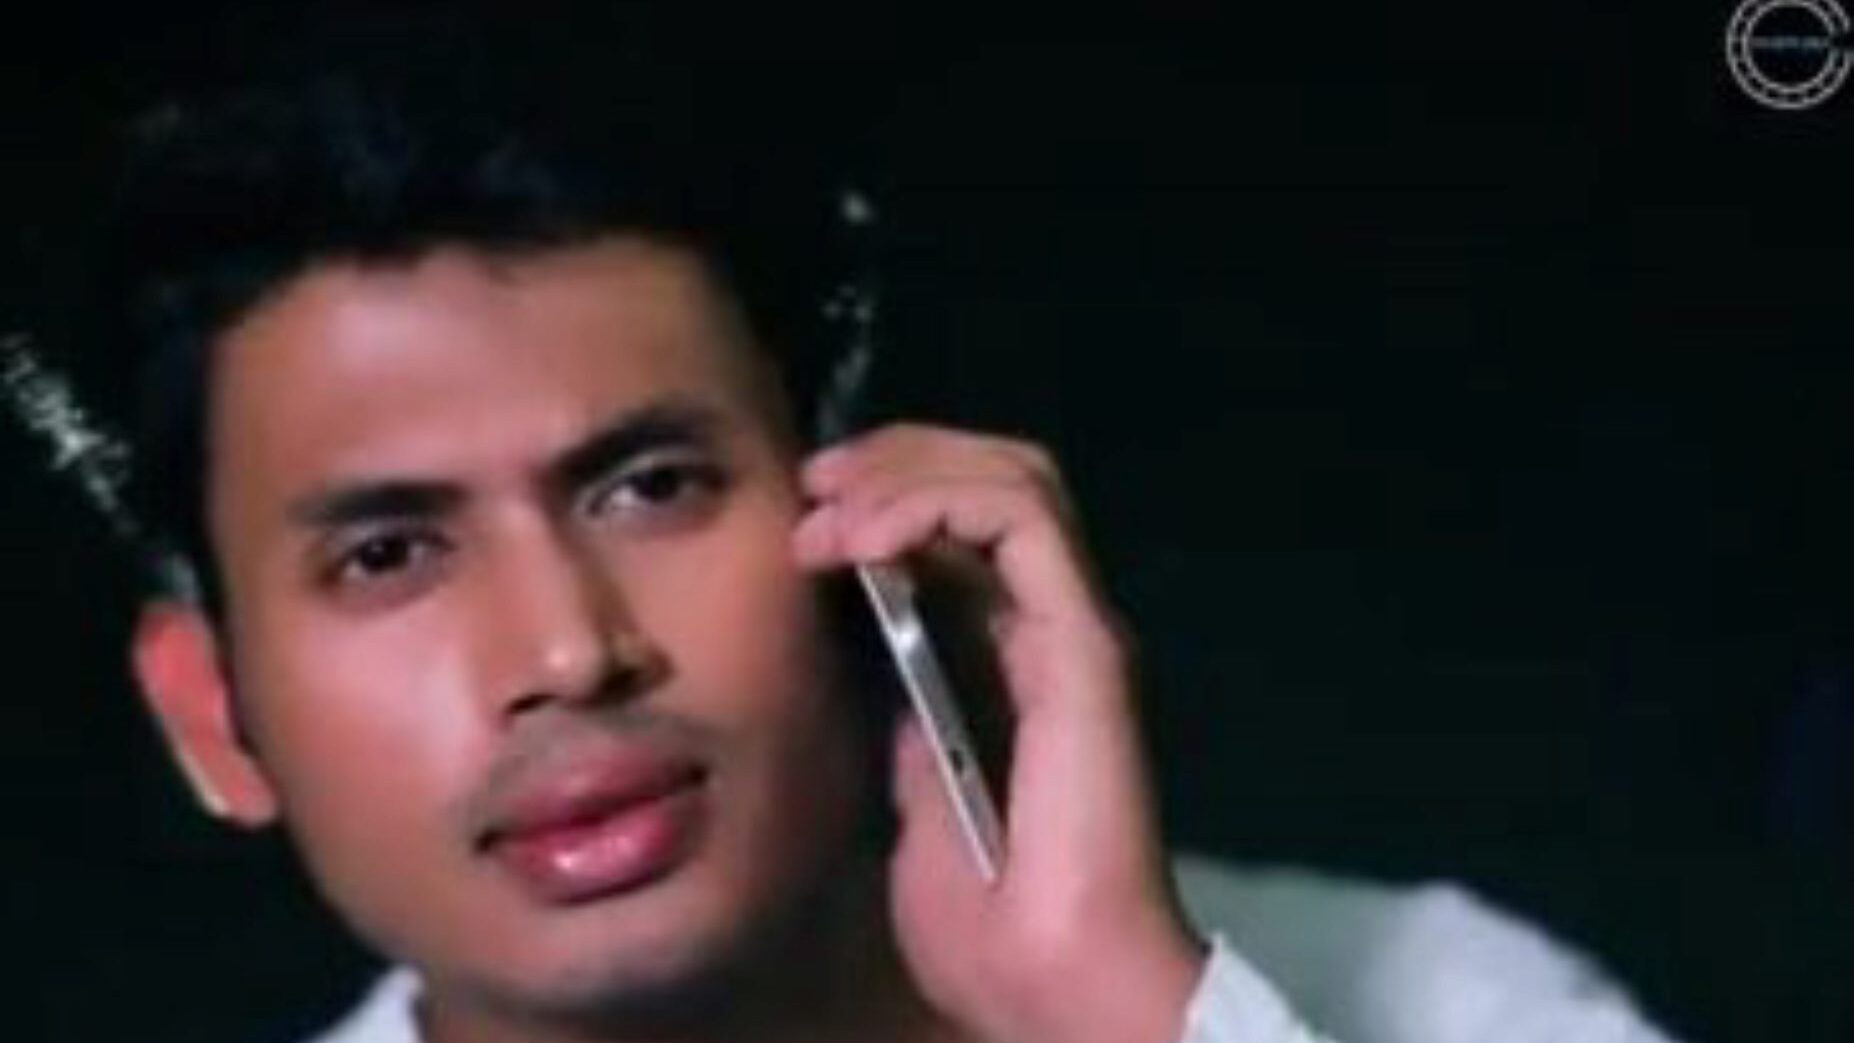 bolti kahani una storia seducente con sporco audio hindi guarda bolti kahani una storia seducente con sporco clip audio hindi su xhamster - la raccolta definitiva di film porno tube hindi indiani gratis per tutti